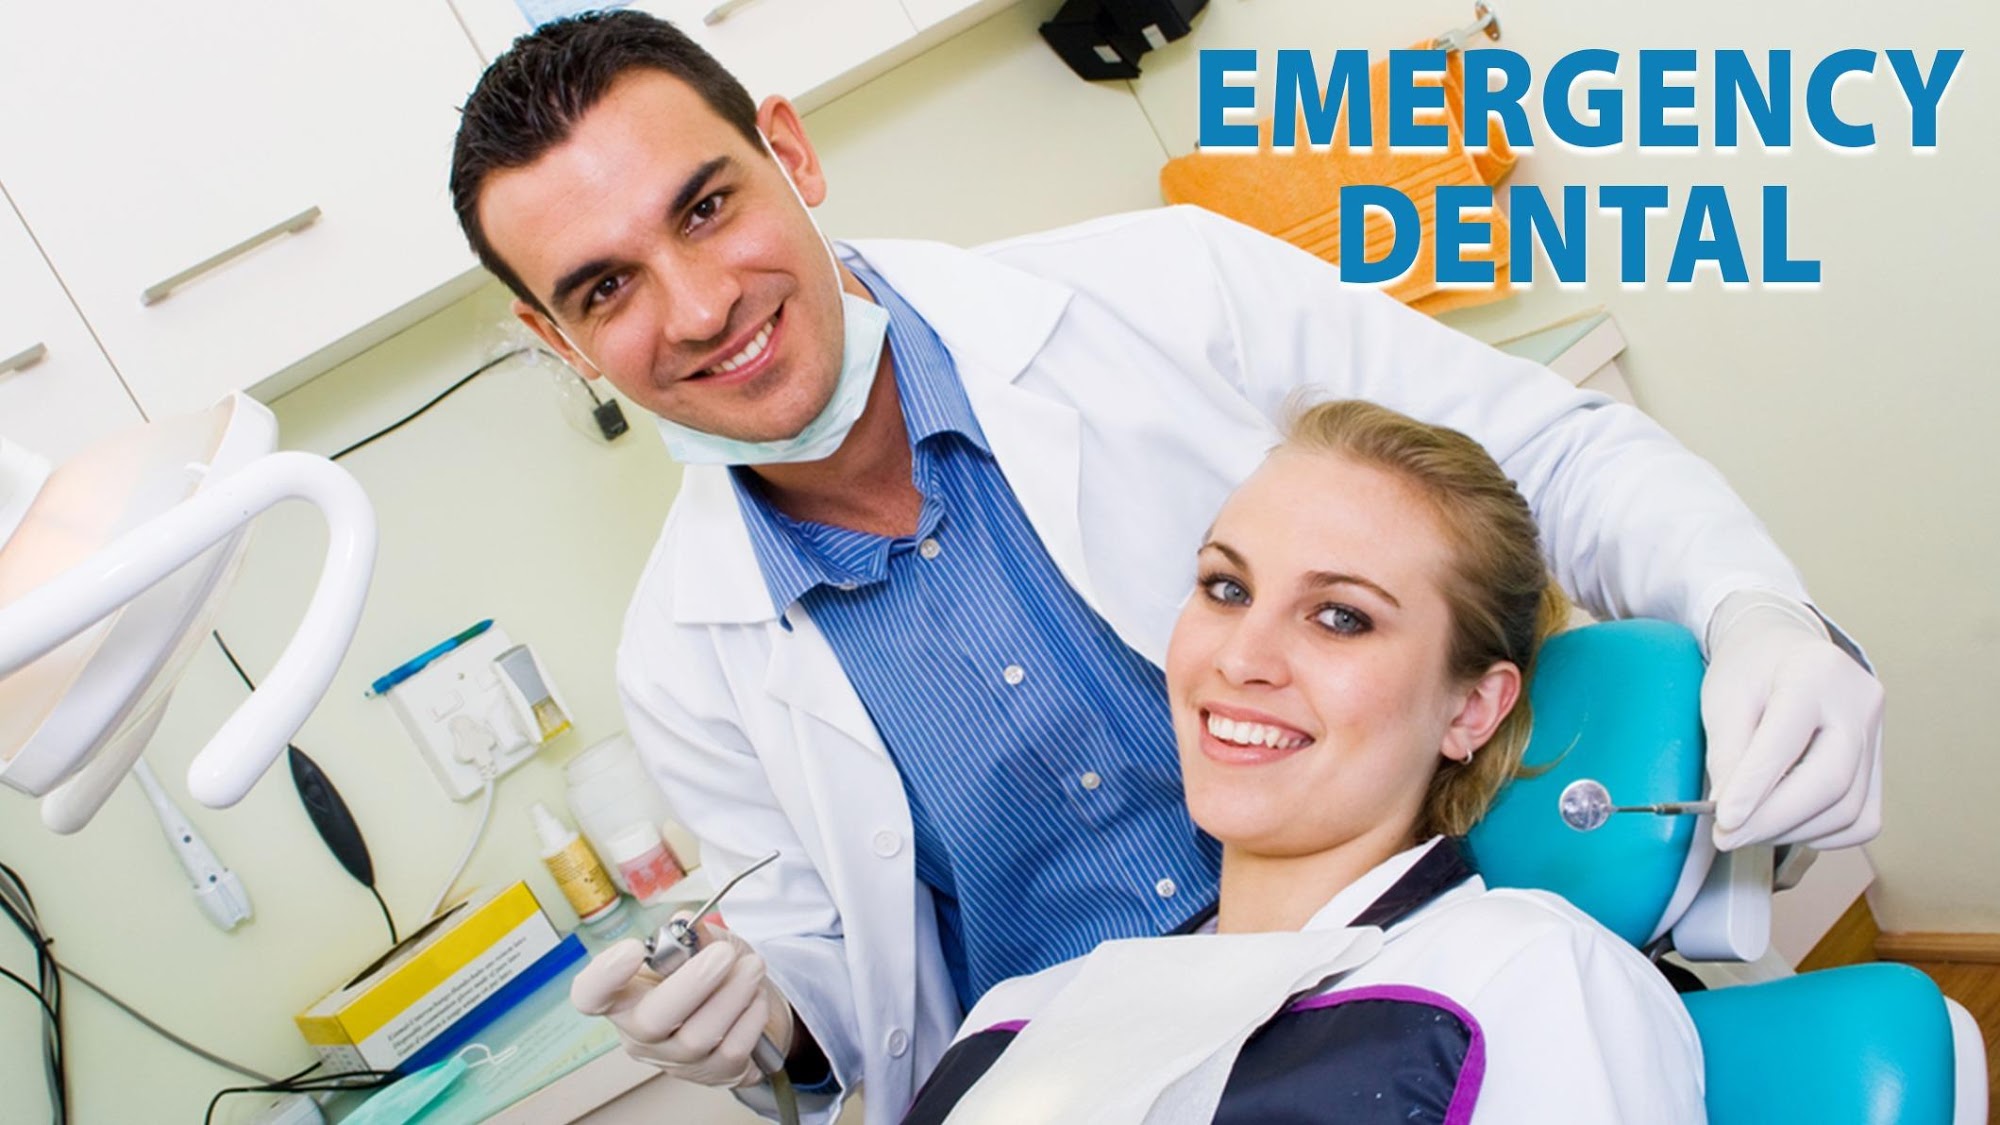 Emergency Dental